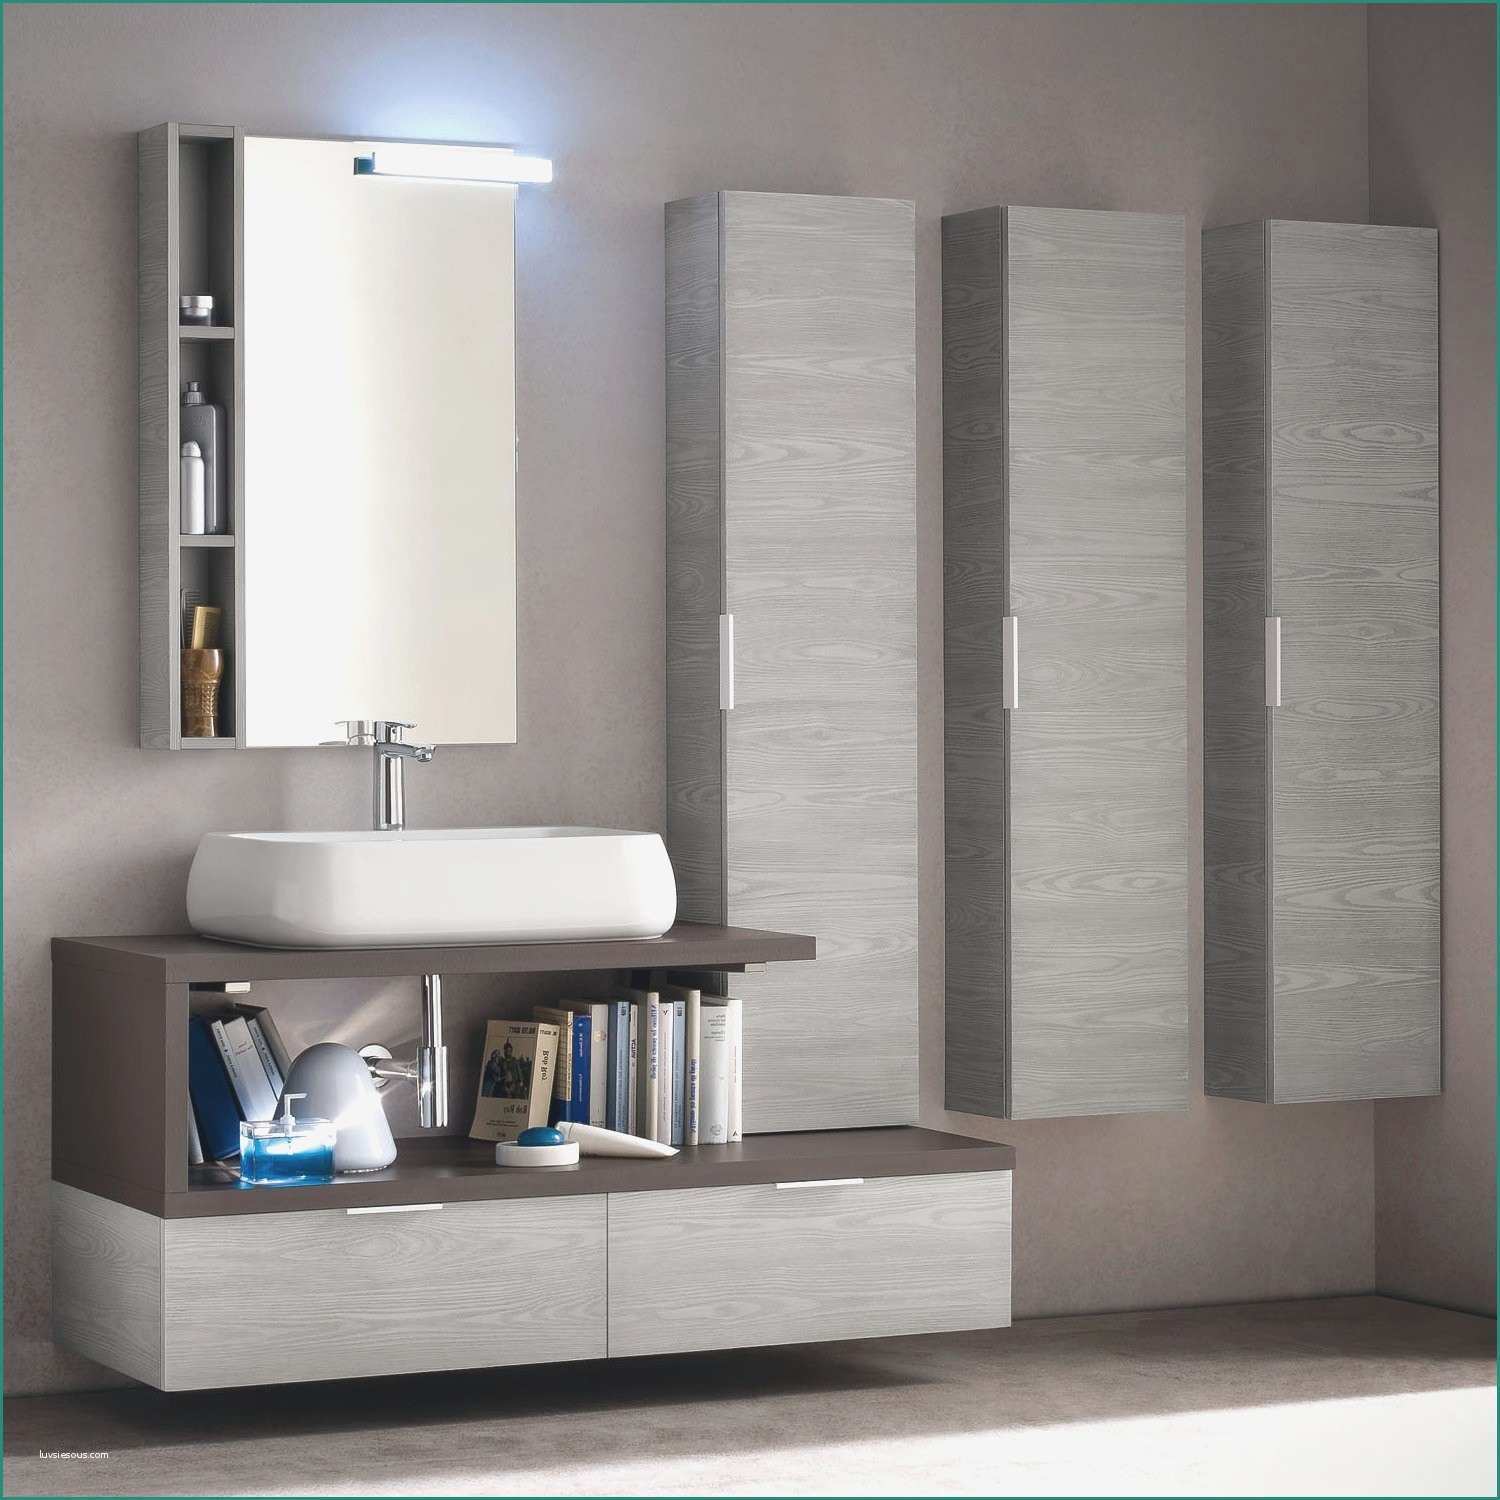 Lavandino Con Mobile Bagno E Elegante Mobile Bagno Ikea Casa Design Idee Su Arredamento